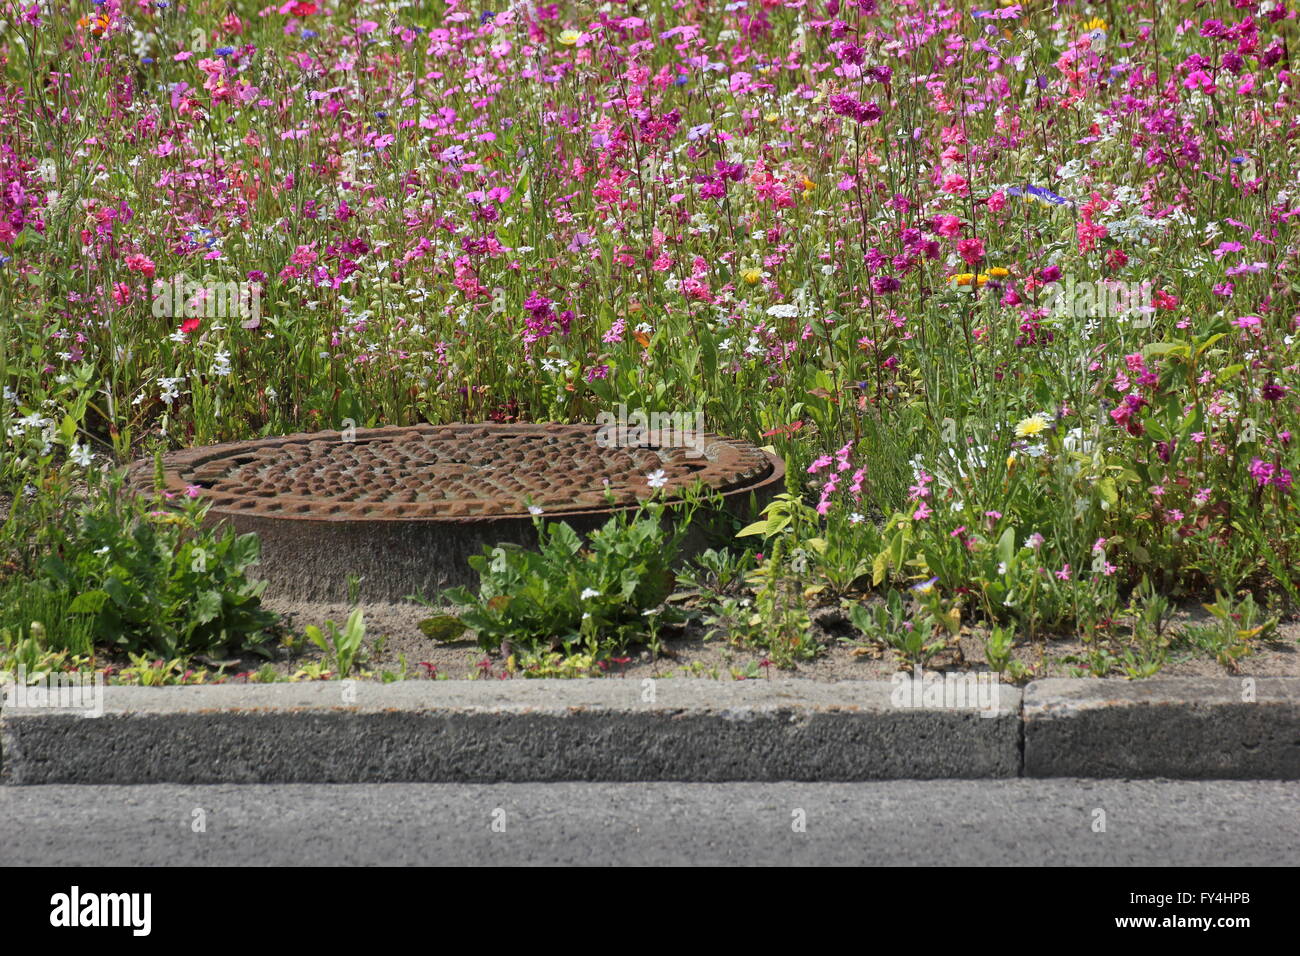 Eine Vielzahl von bunten Blumen und Kräutern auf einer zentralen Reserve innerhalb der Stadt. Das Bild wurde in Deutschland gedreht. Stockfoto